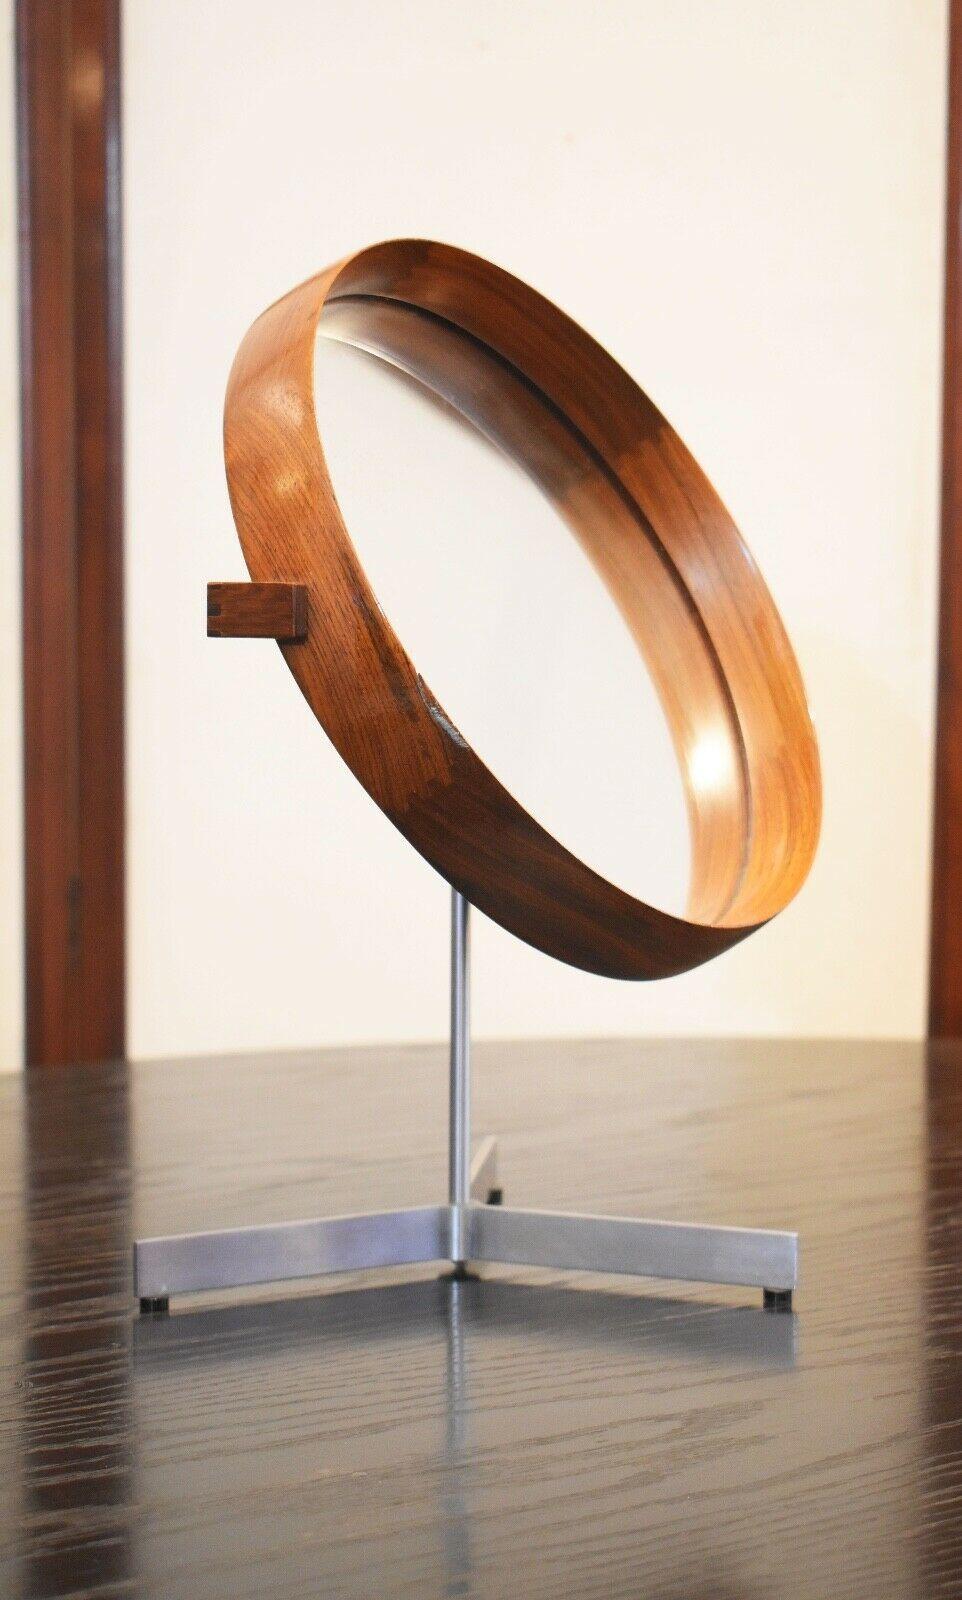 Cet étonnant miroir de table par Uno & Östen Kristiansson
a une structure en chêne lisse et élégamment jointe et repose sur une base en acier.